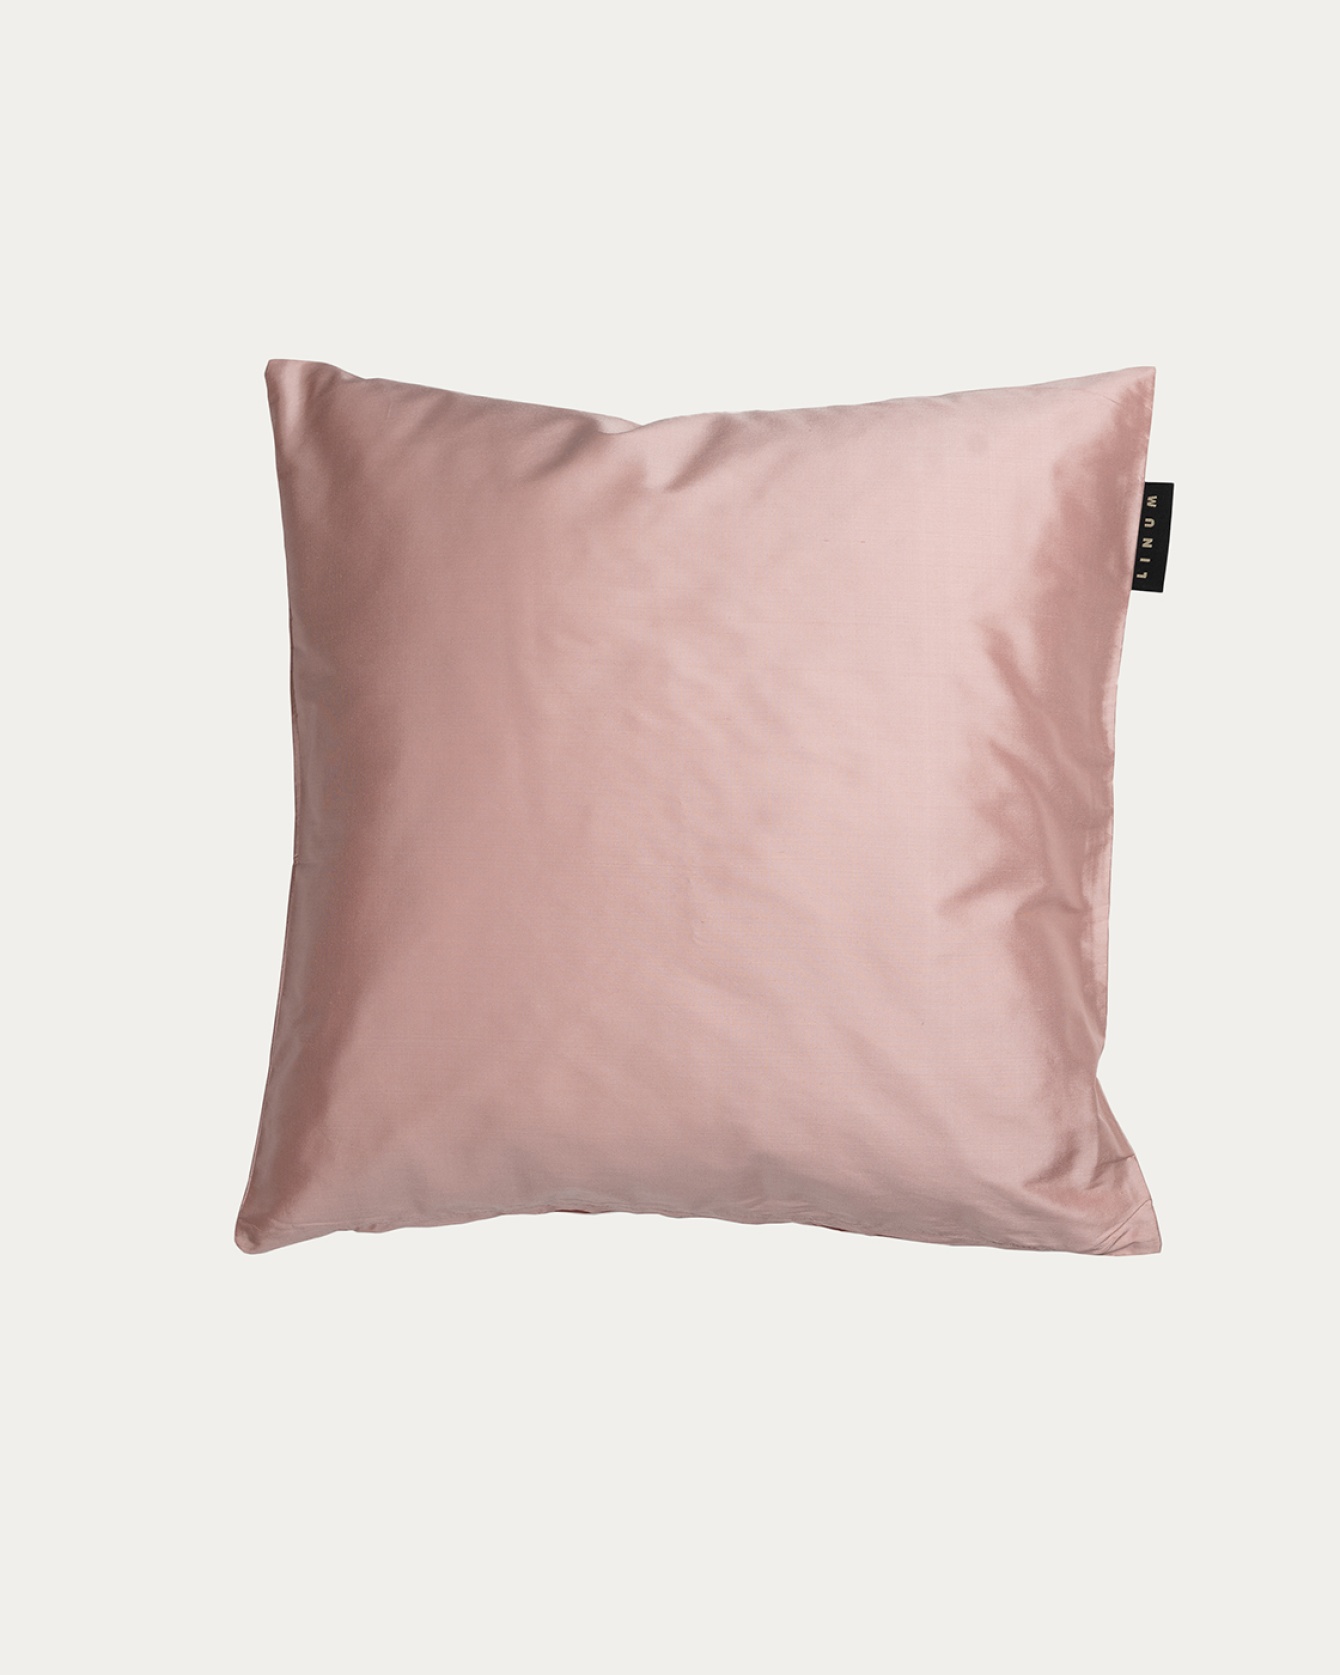 Produktbild dammig rosa SILK kuddfodral av 100% dupionsilke som ger ett fint lyster från LINUM DESIGN. Storlek 40x40 cm.